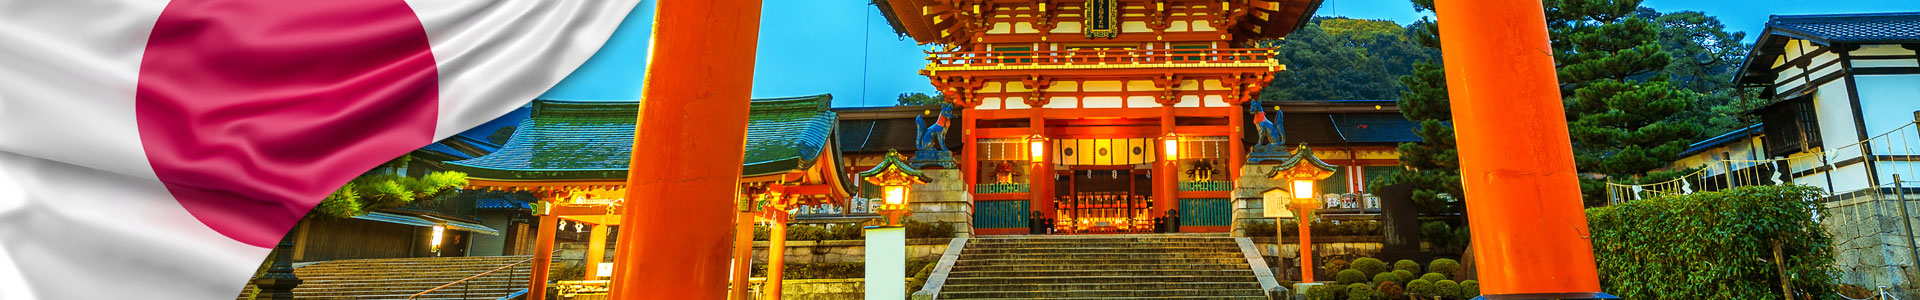 Bandera de Japón con foto de Santuario Fushimi inari shrine en kyoto, Japón